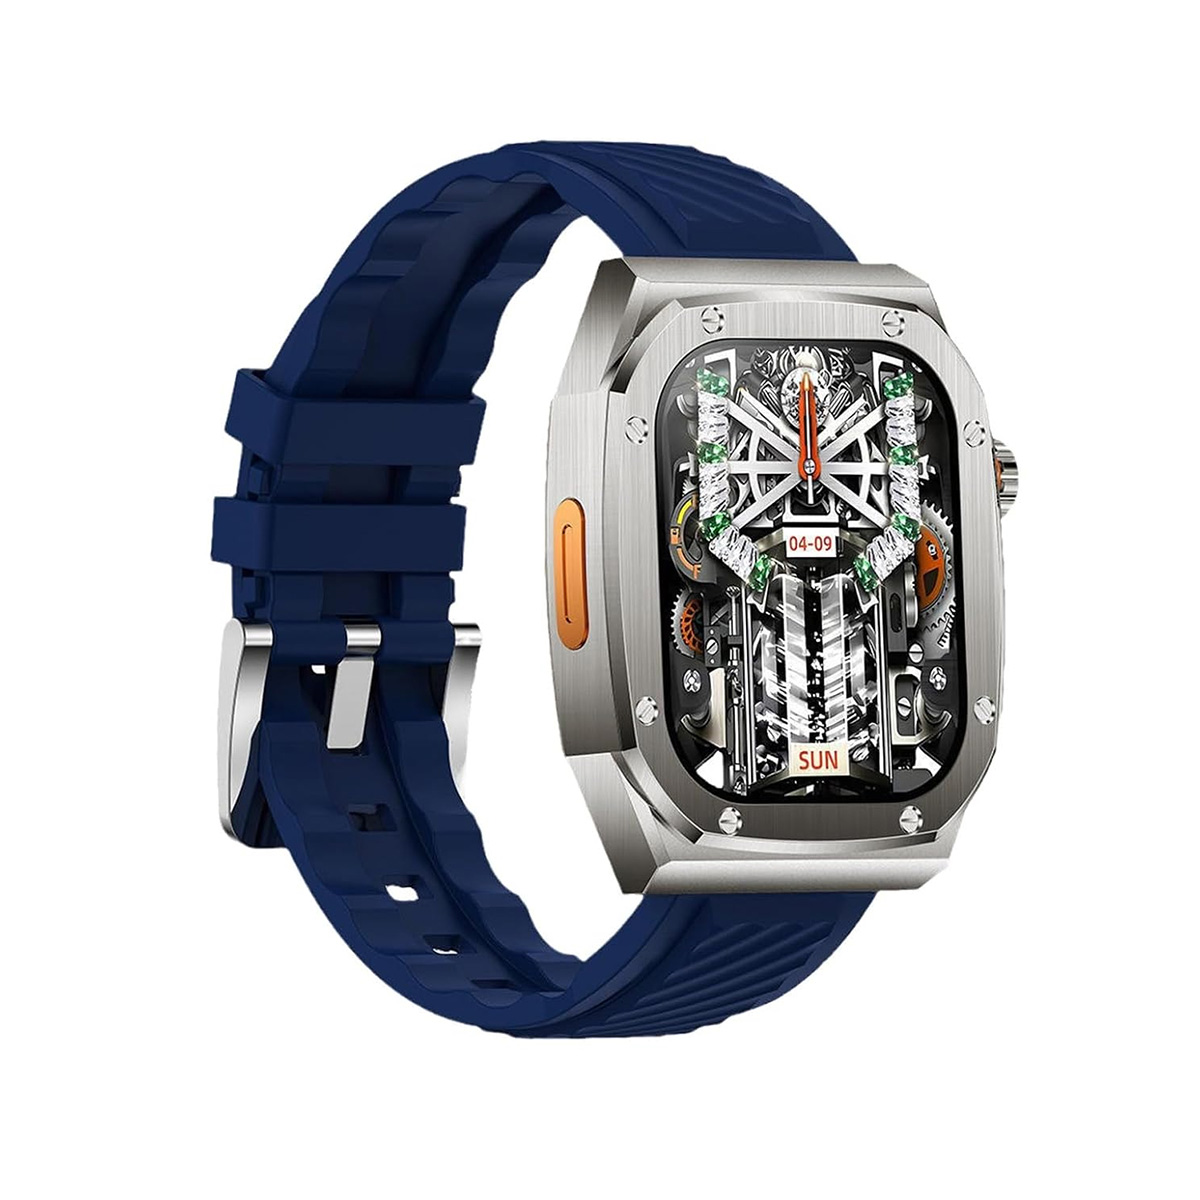 Smartwatch Klack Z79 Max, Relógio Inteligente Com Ecrã Ultra Hd De 2,1 Polegadas, Ip68 À Prova De Água, 100 Modos Desportivos, 460 Mah - Azul | Sport Zone MKP